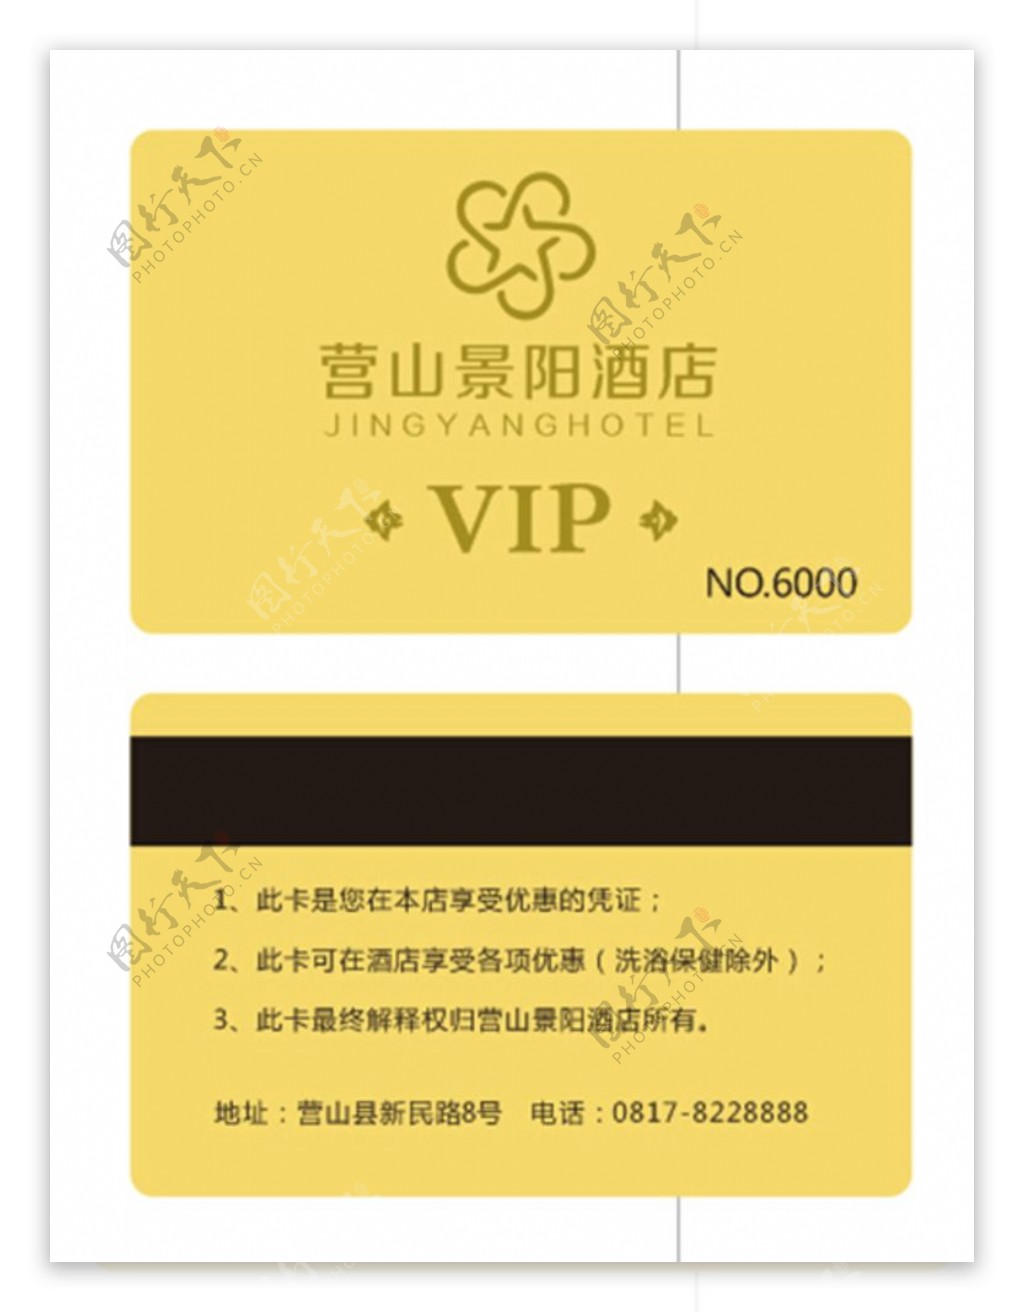 景阳VIP卡